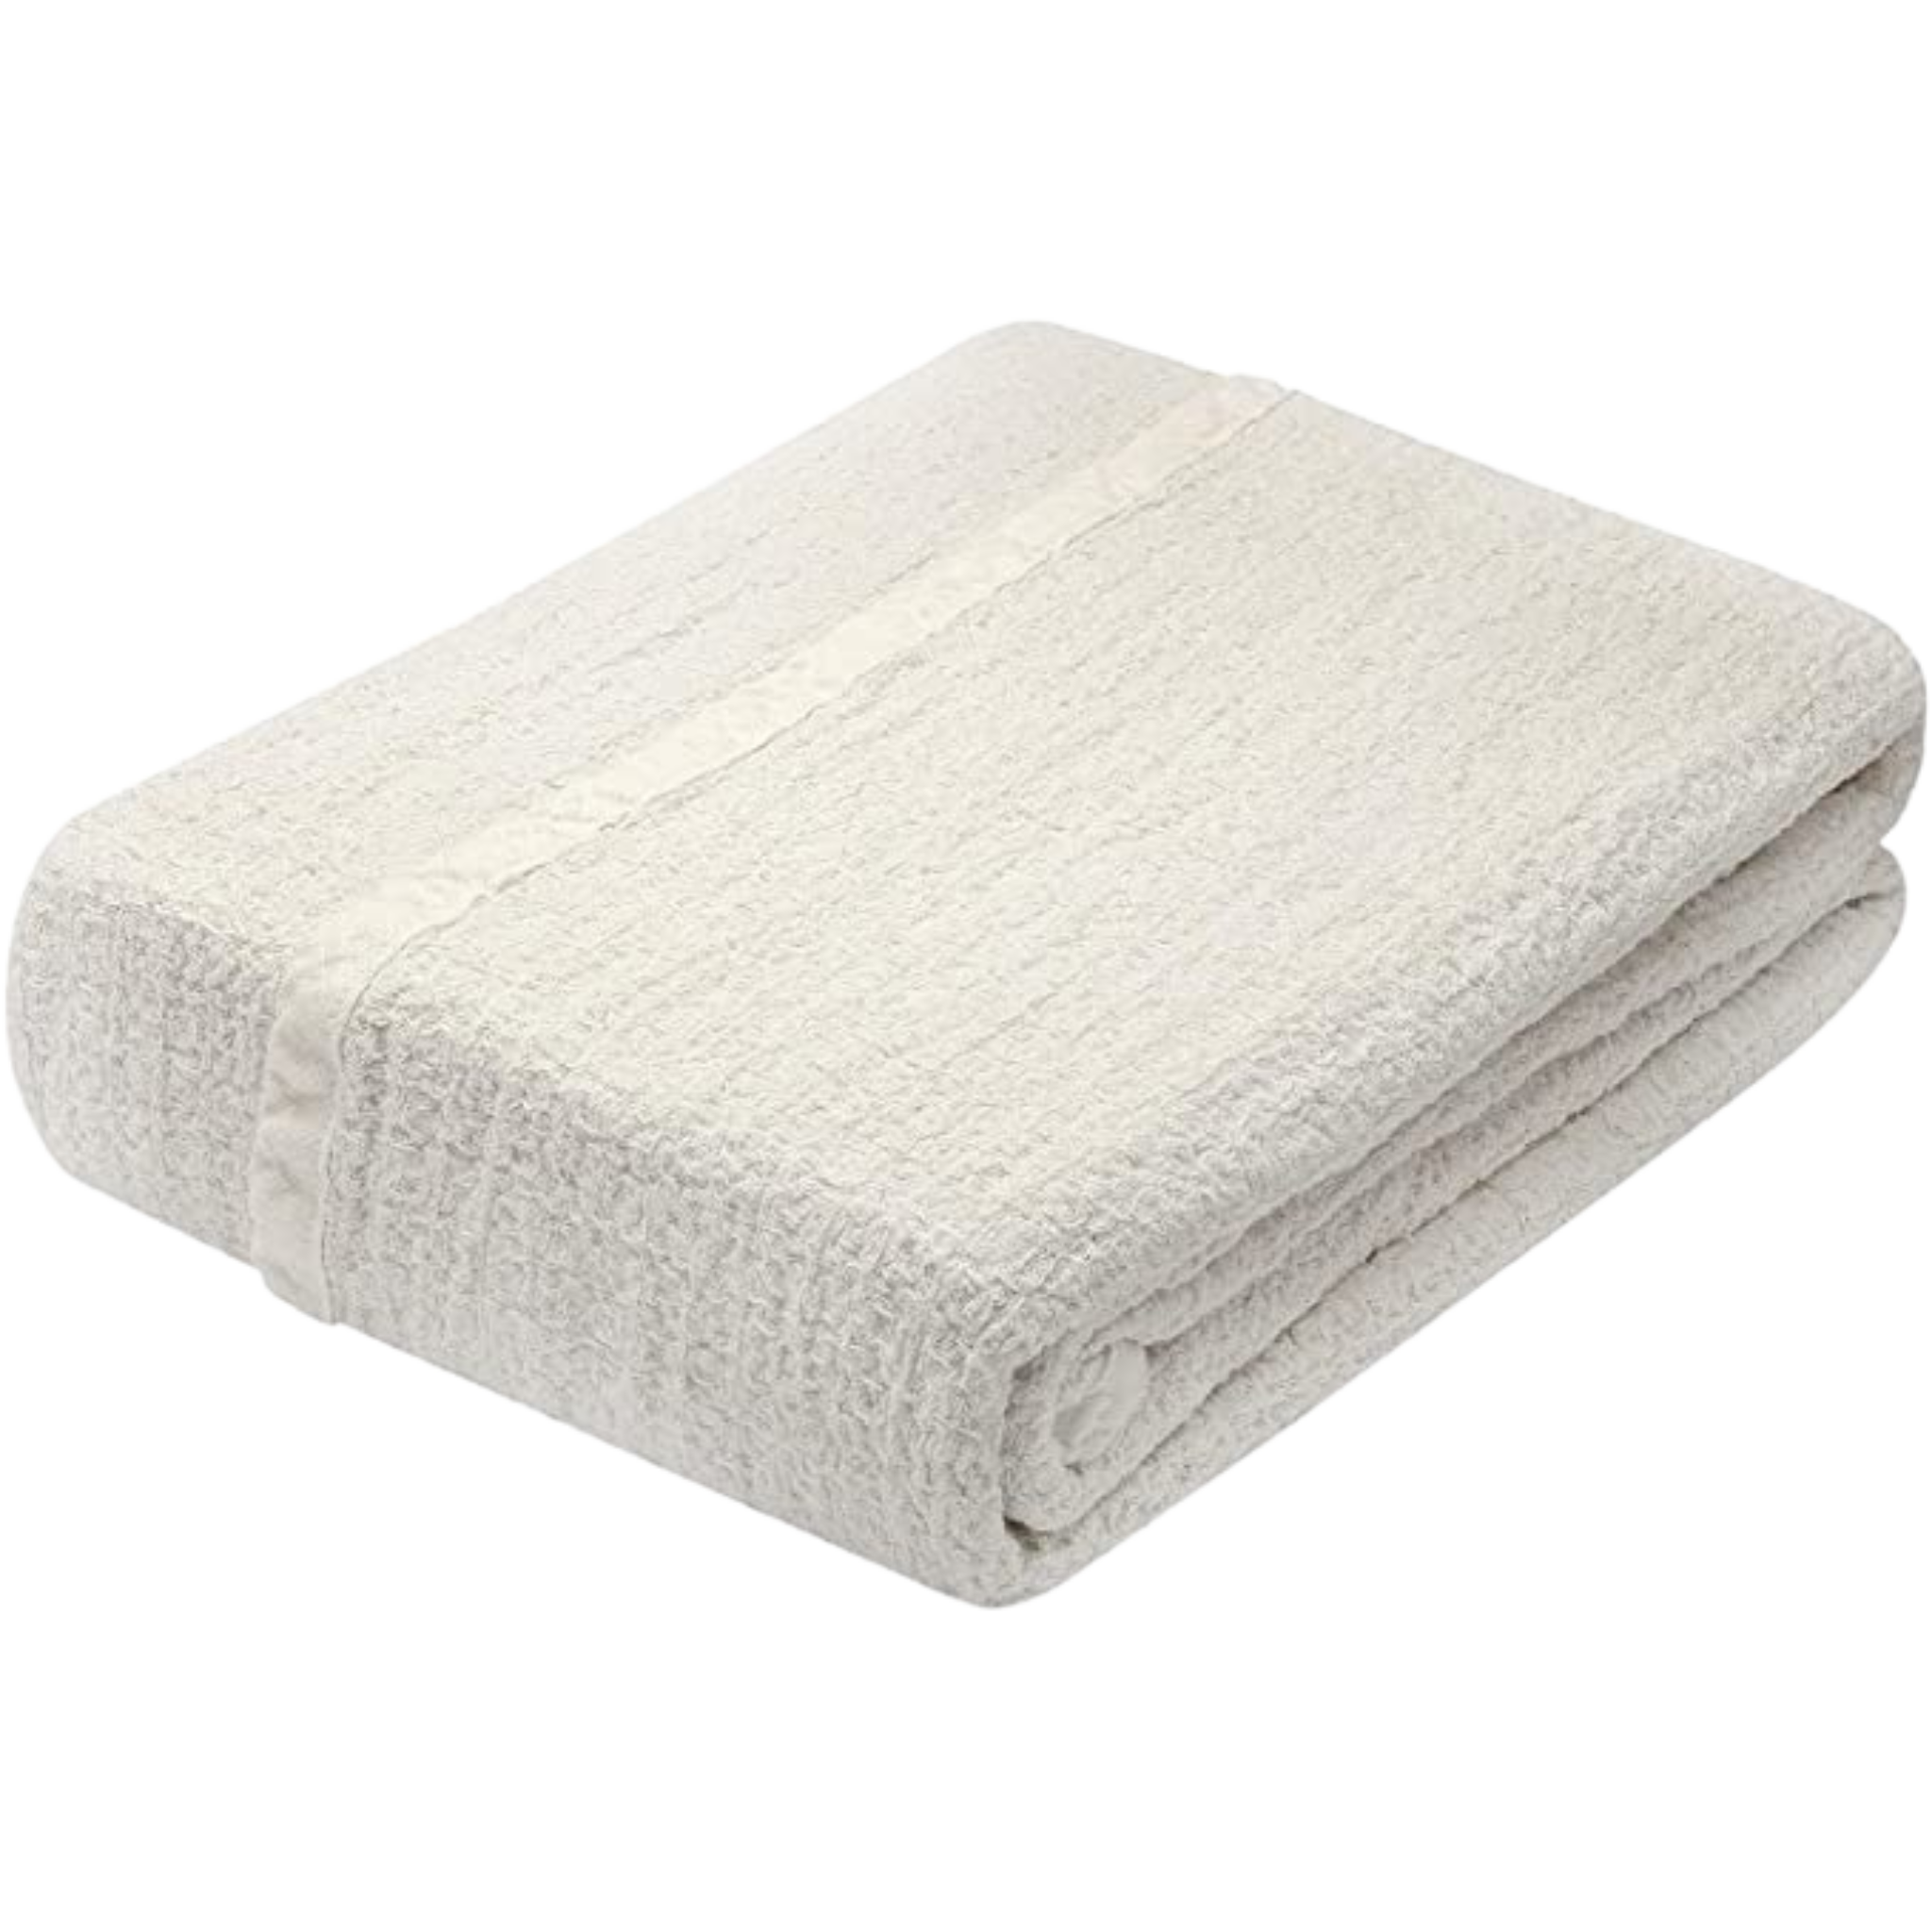 White Throw Blanket